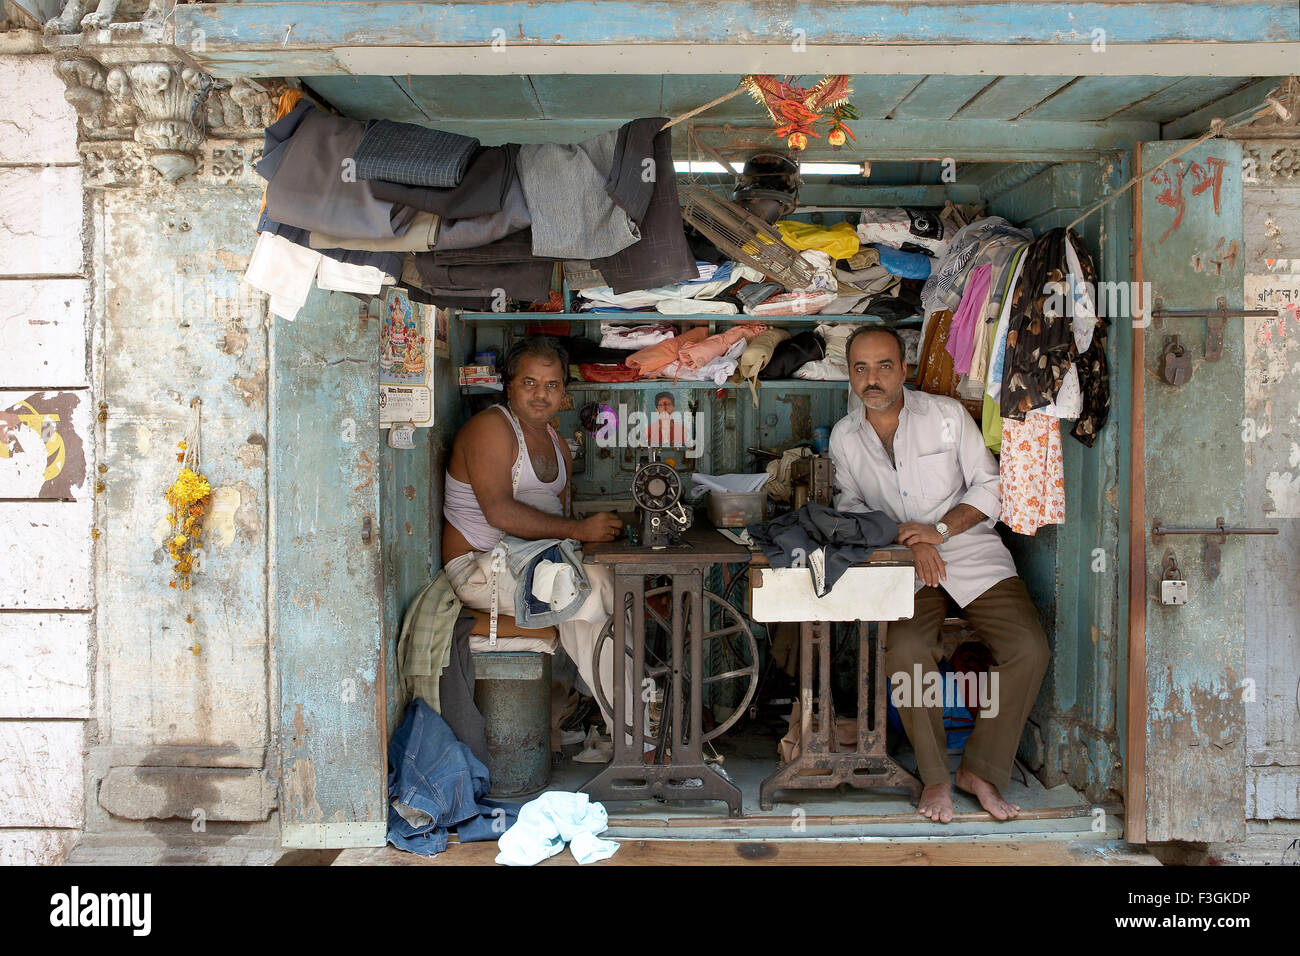 Uno spazio letteralmente montare abbastanza per mettere due macchine da cucire e sgabelli diventa un occupato sartoria ; Mumbai Bombay ; Maharashtra Foto Stock